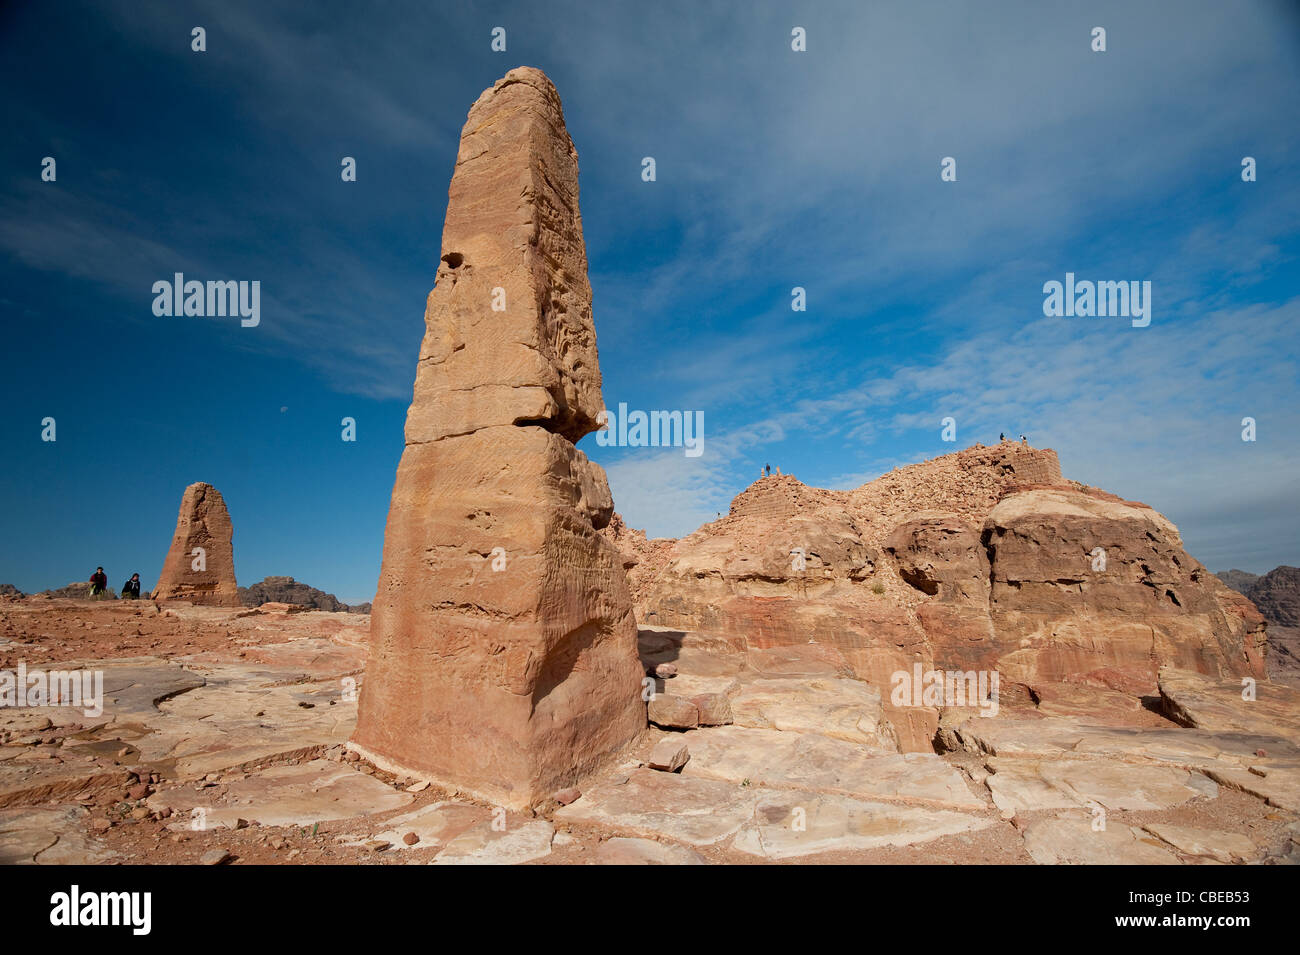 The High Place of Sacrifice, Petra Jordan Stock Photo